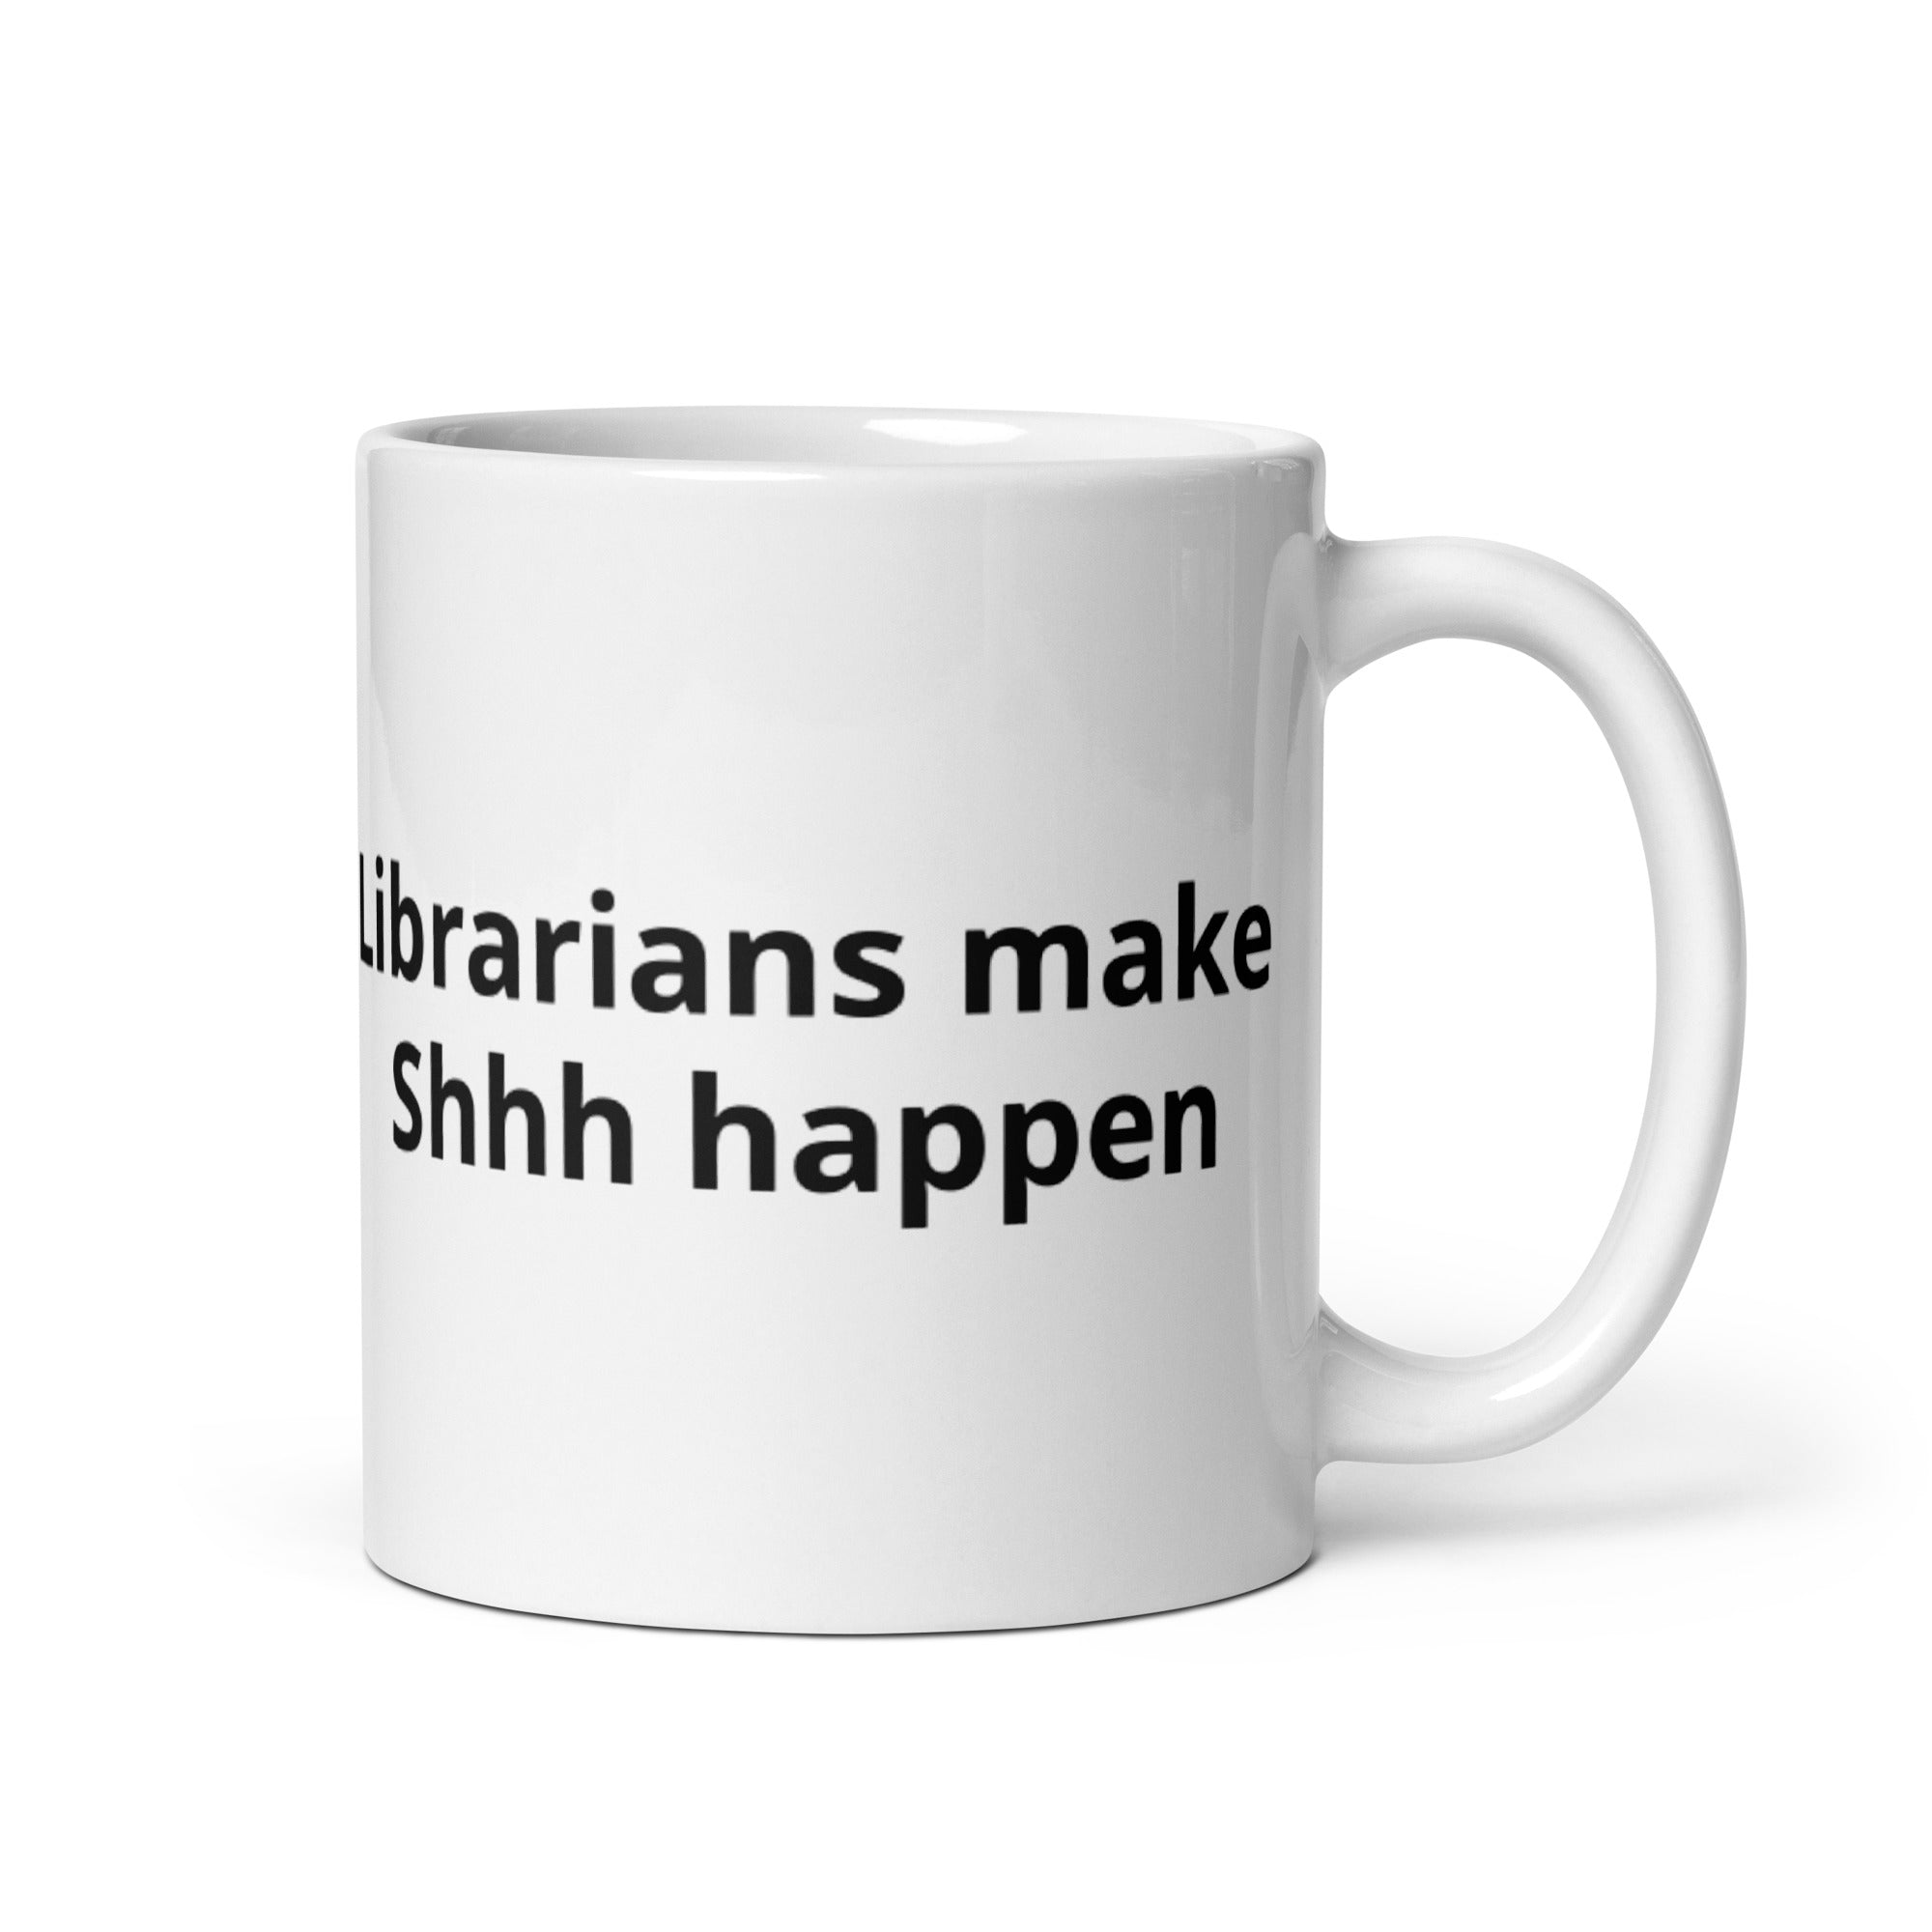 Librarian| 11oz or 15oz | Funny Occupational Coffee Mug, Humorous Quote Coffee Mug, Tea Mug